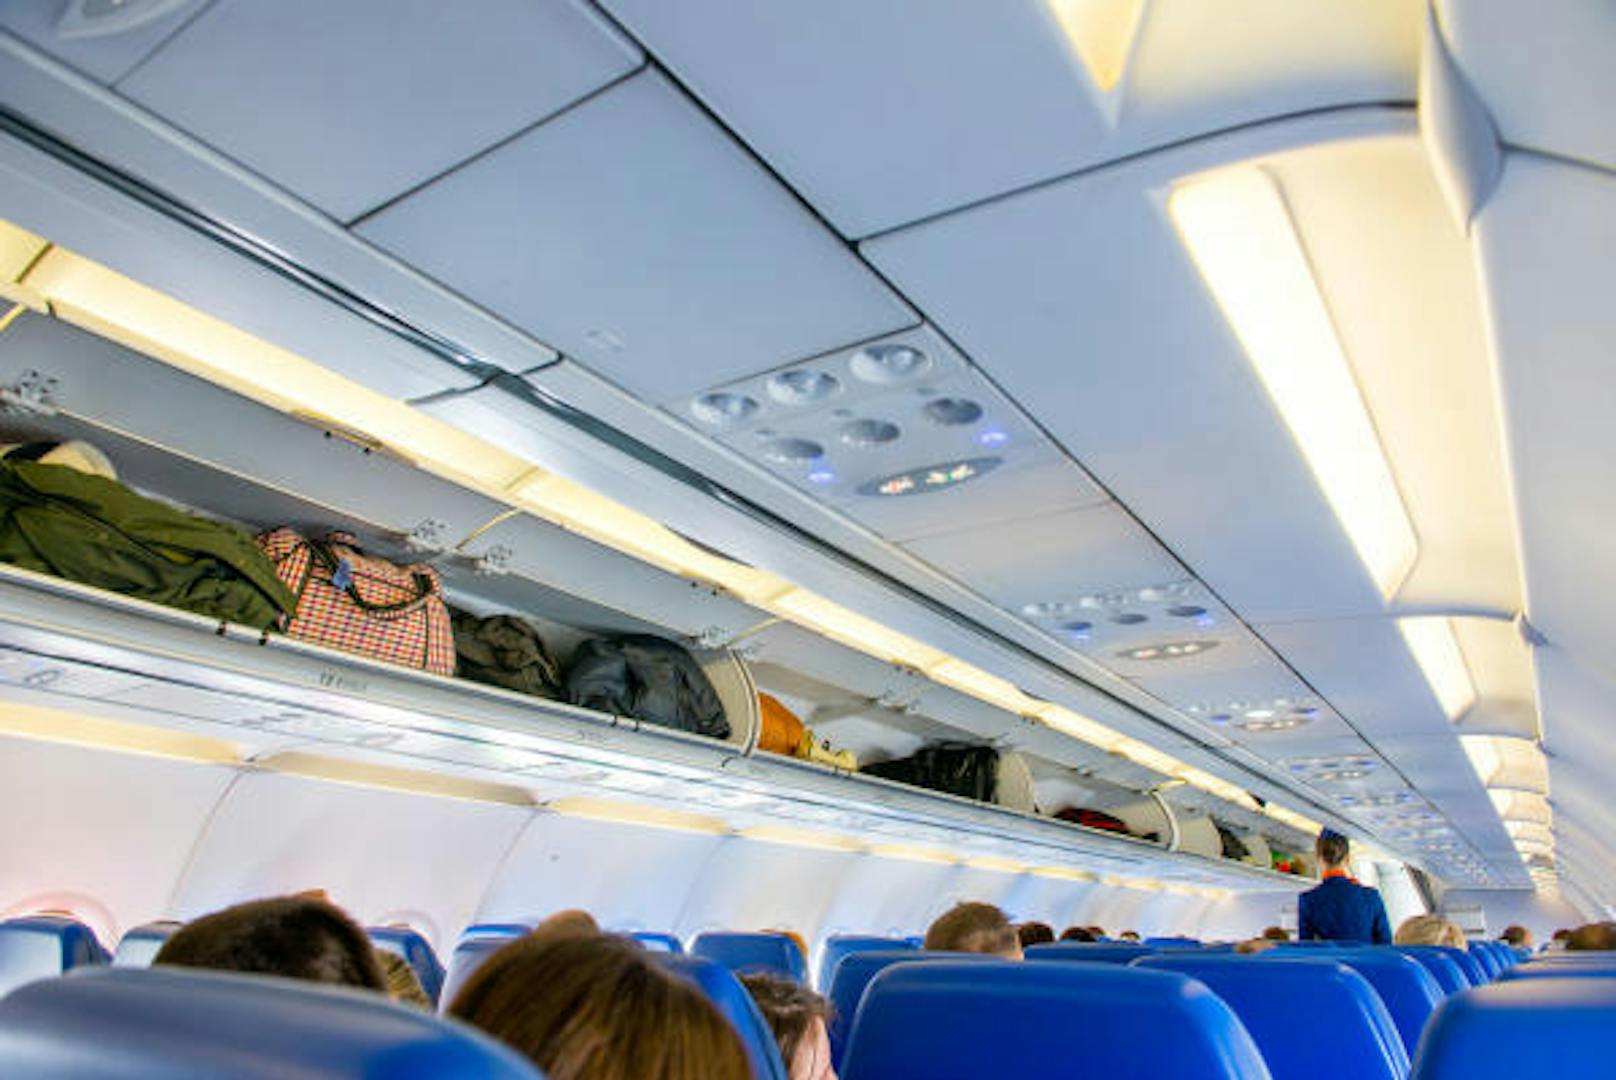 <b>2. Kauft die offizielle Handgepäckstasche:</b>
Viele Händler bieten bereits sogenannte Kabinen geprüfte Taschen für euer Handgepäck an, die kompatibel mit den Gepäckbestimmungen der meisten größeren Airlines sind. Wenn ihr jedoch hundertprozentig sichergehen wollt, dass bei eurem Flug mit Ryanair garantiert keine Probleme mit dem Handgepäck entstehen, dann könnt ihr auch einfach die offizielle Handgepäckstasche von Ryanair direkt benutzen.